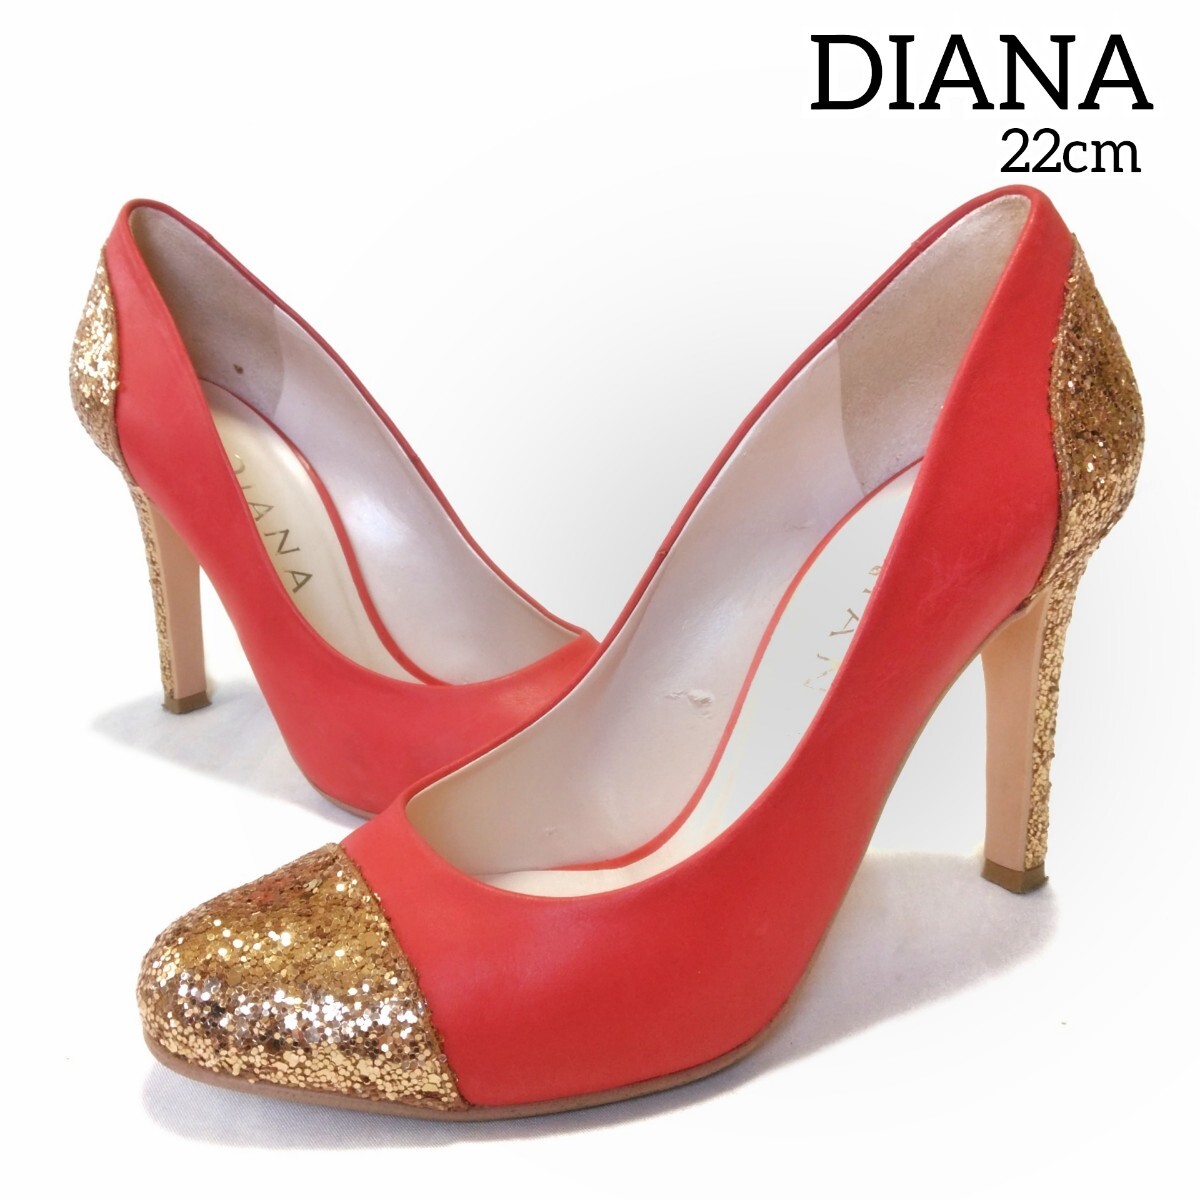 2【DIANA】 ダイアナ グリッターラメ パンプス 22cm 赤 レッド ゴールド パーティー 発表会 結婚式 小さいサイズ フォーマル レディース